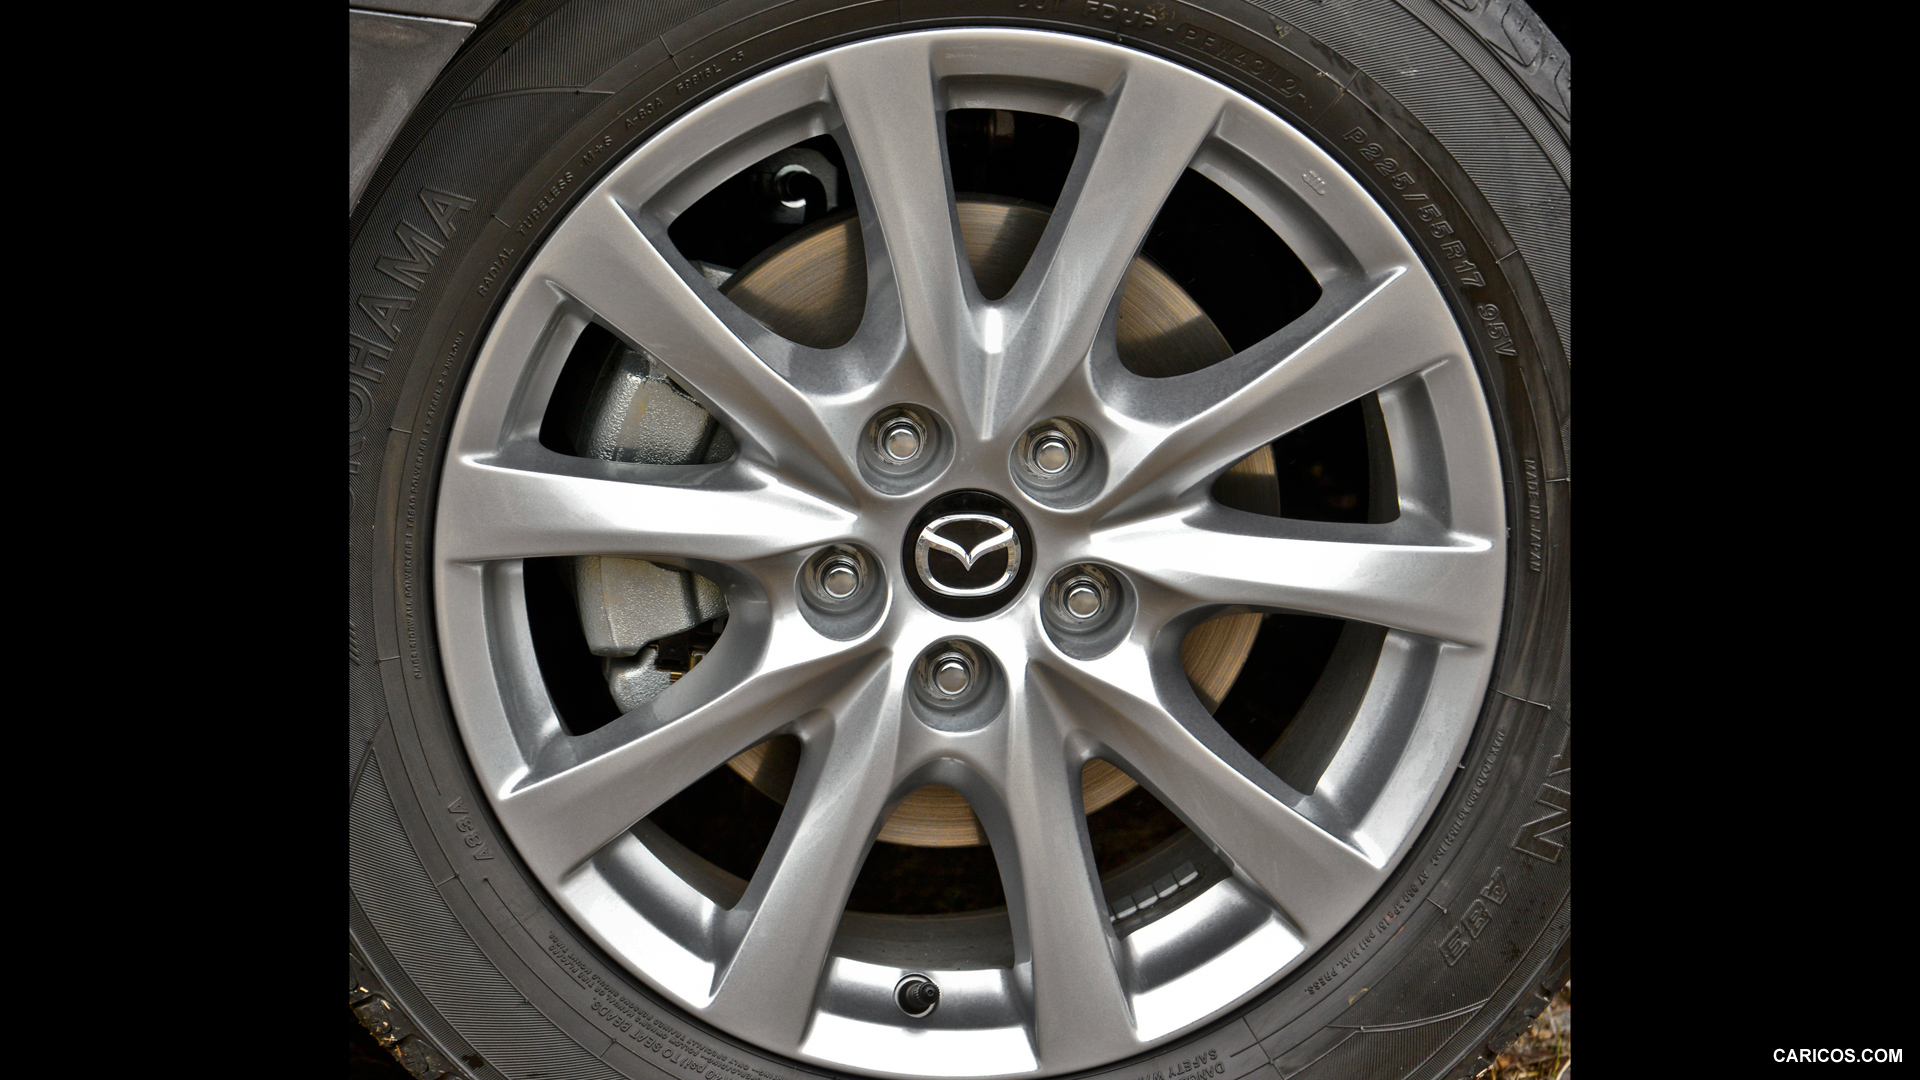 2014 Mazda6 Sport - Wheel, #93 of 179